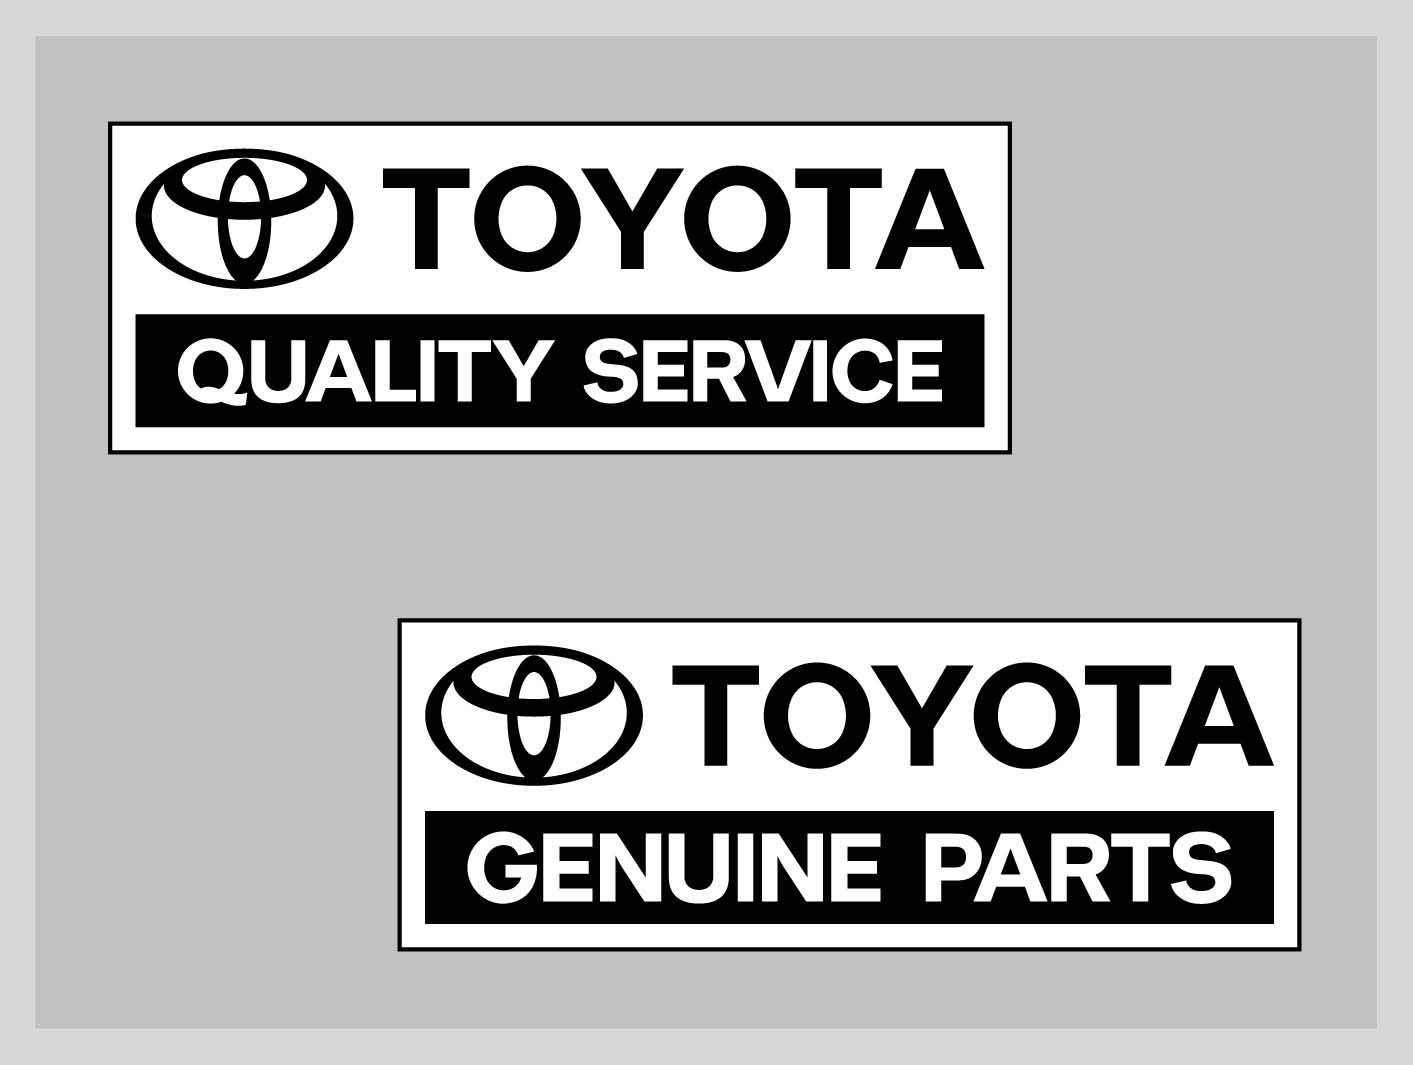 314 FAKTA OM UNDERHÅLL Fakta om underhåll Regelbundet underhåll är mycket viktigt. Vi rekommenderar att du skyddar din Toyota genom att lämna in den för service enligt det separata servicehäftet.